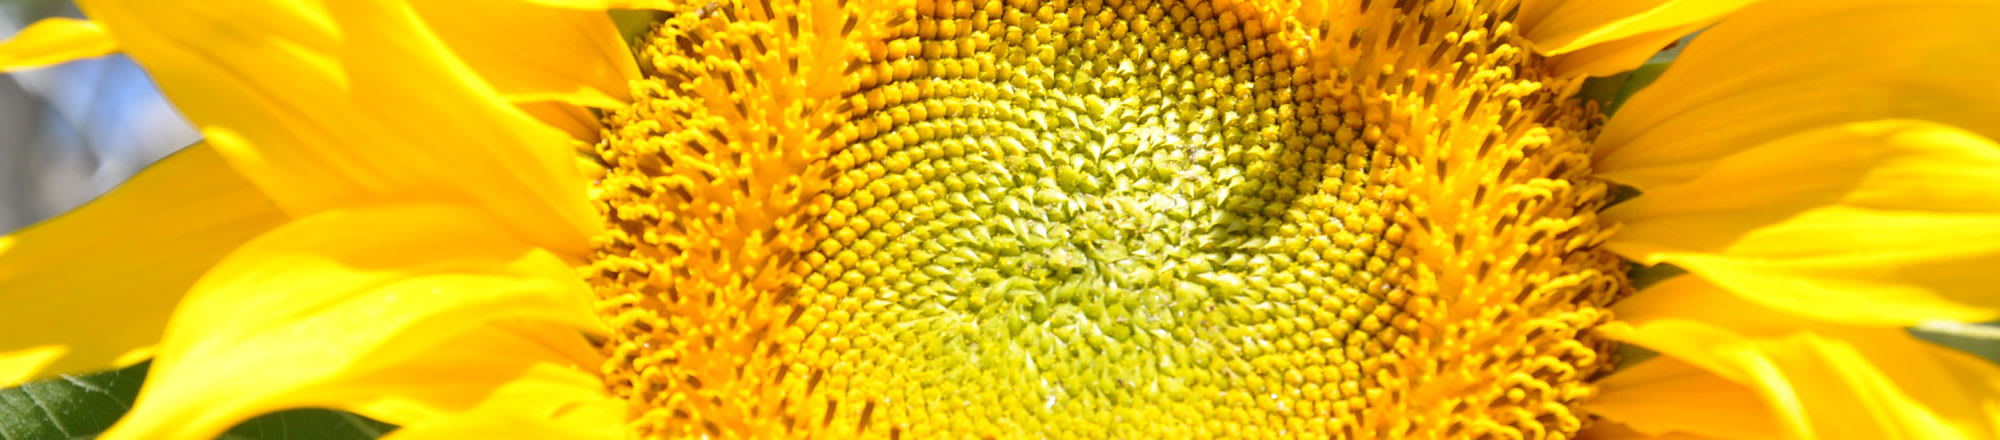 Wissenswertes über Sonnenblumen im Topf